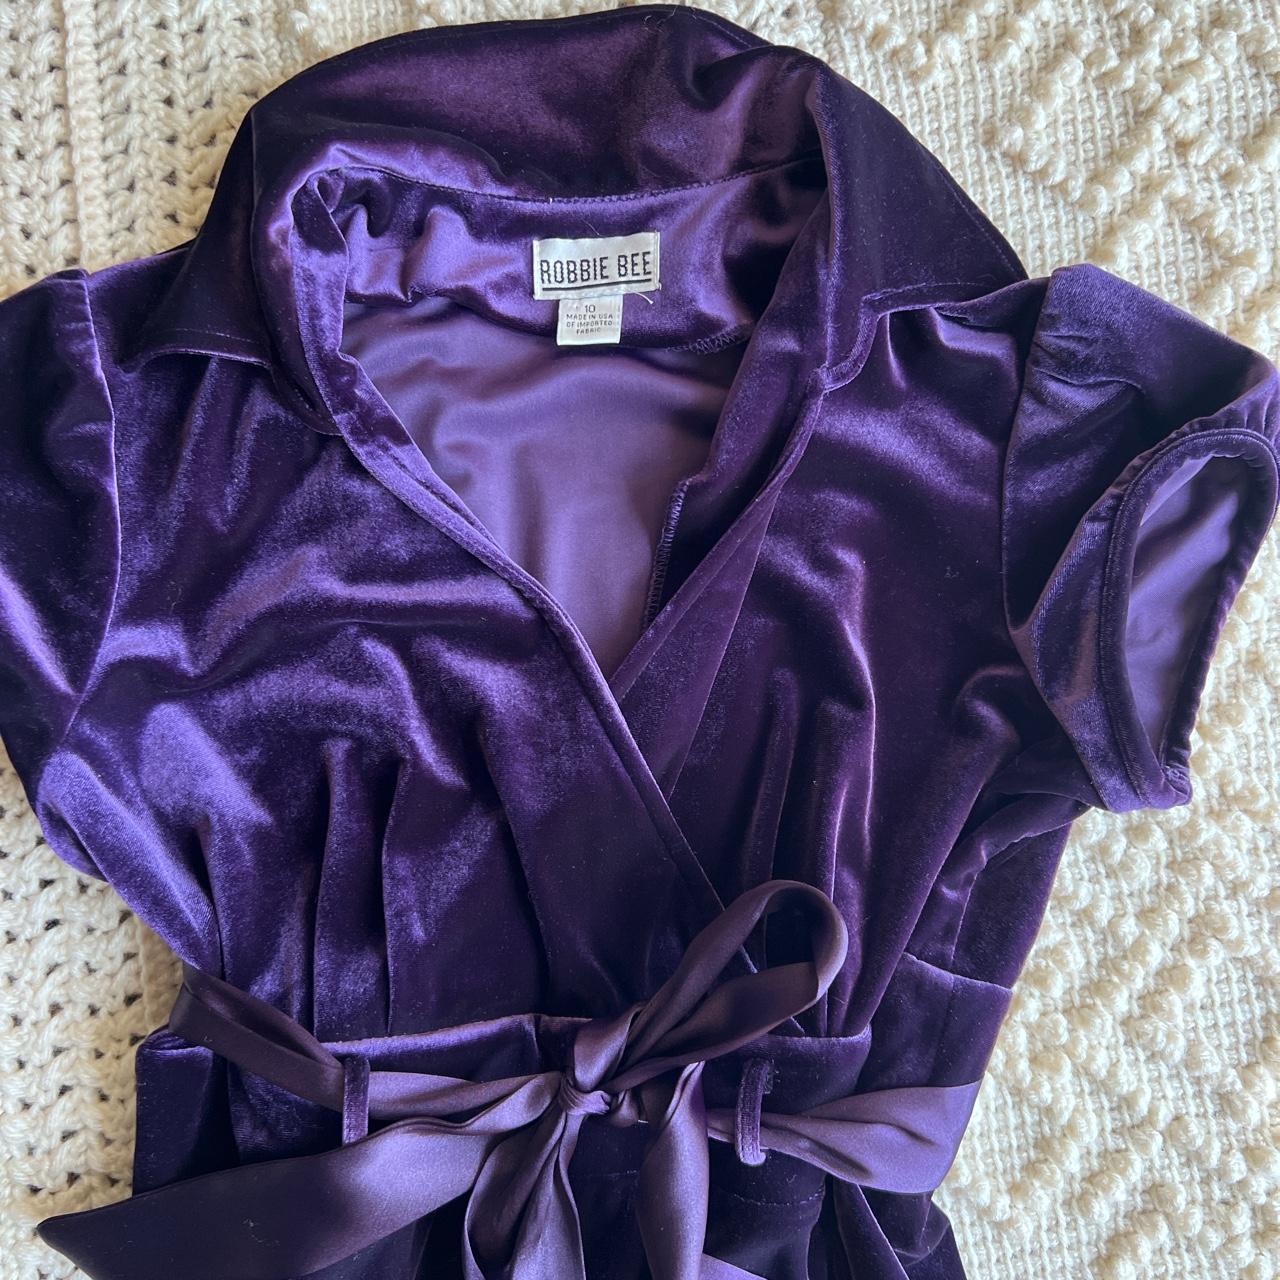 Robbie Bee Women's Purple Dress | Depop